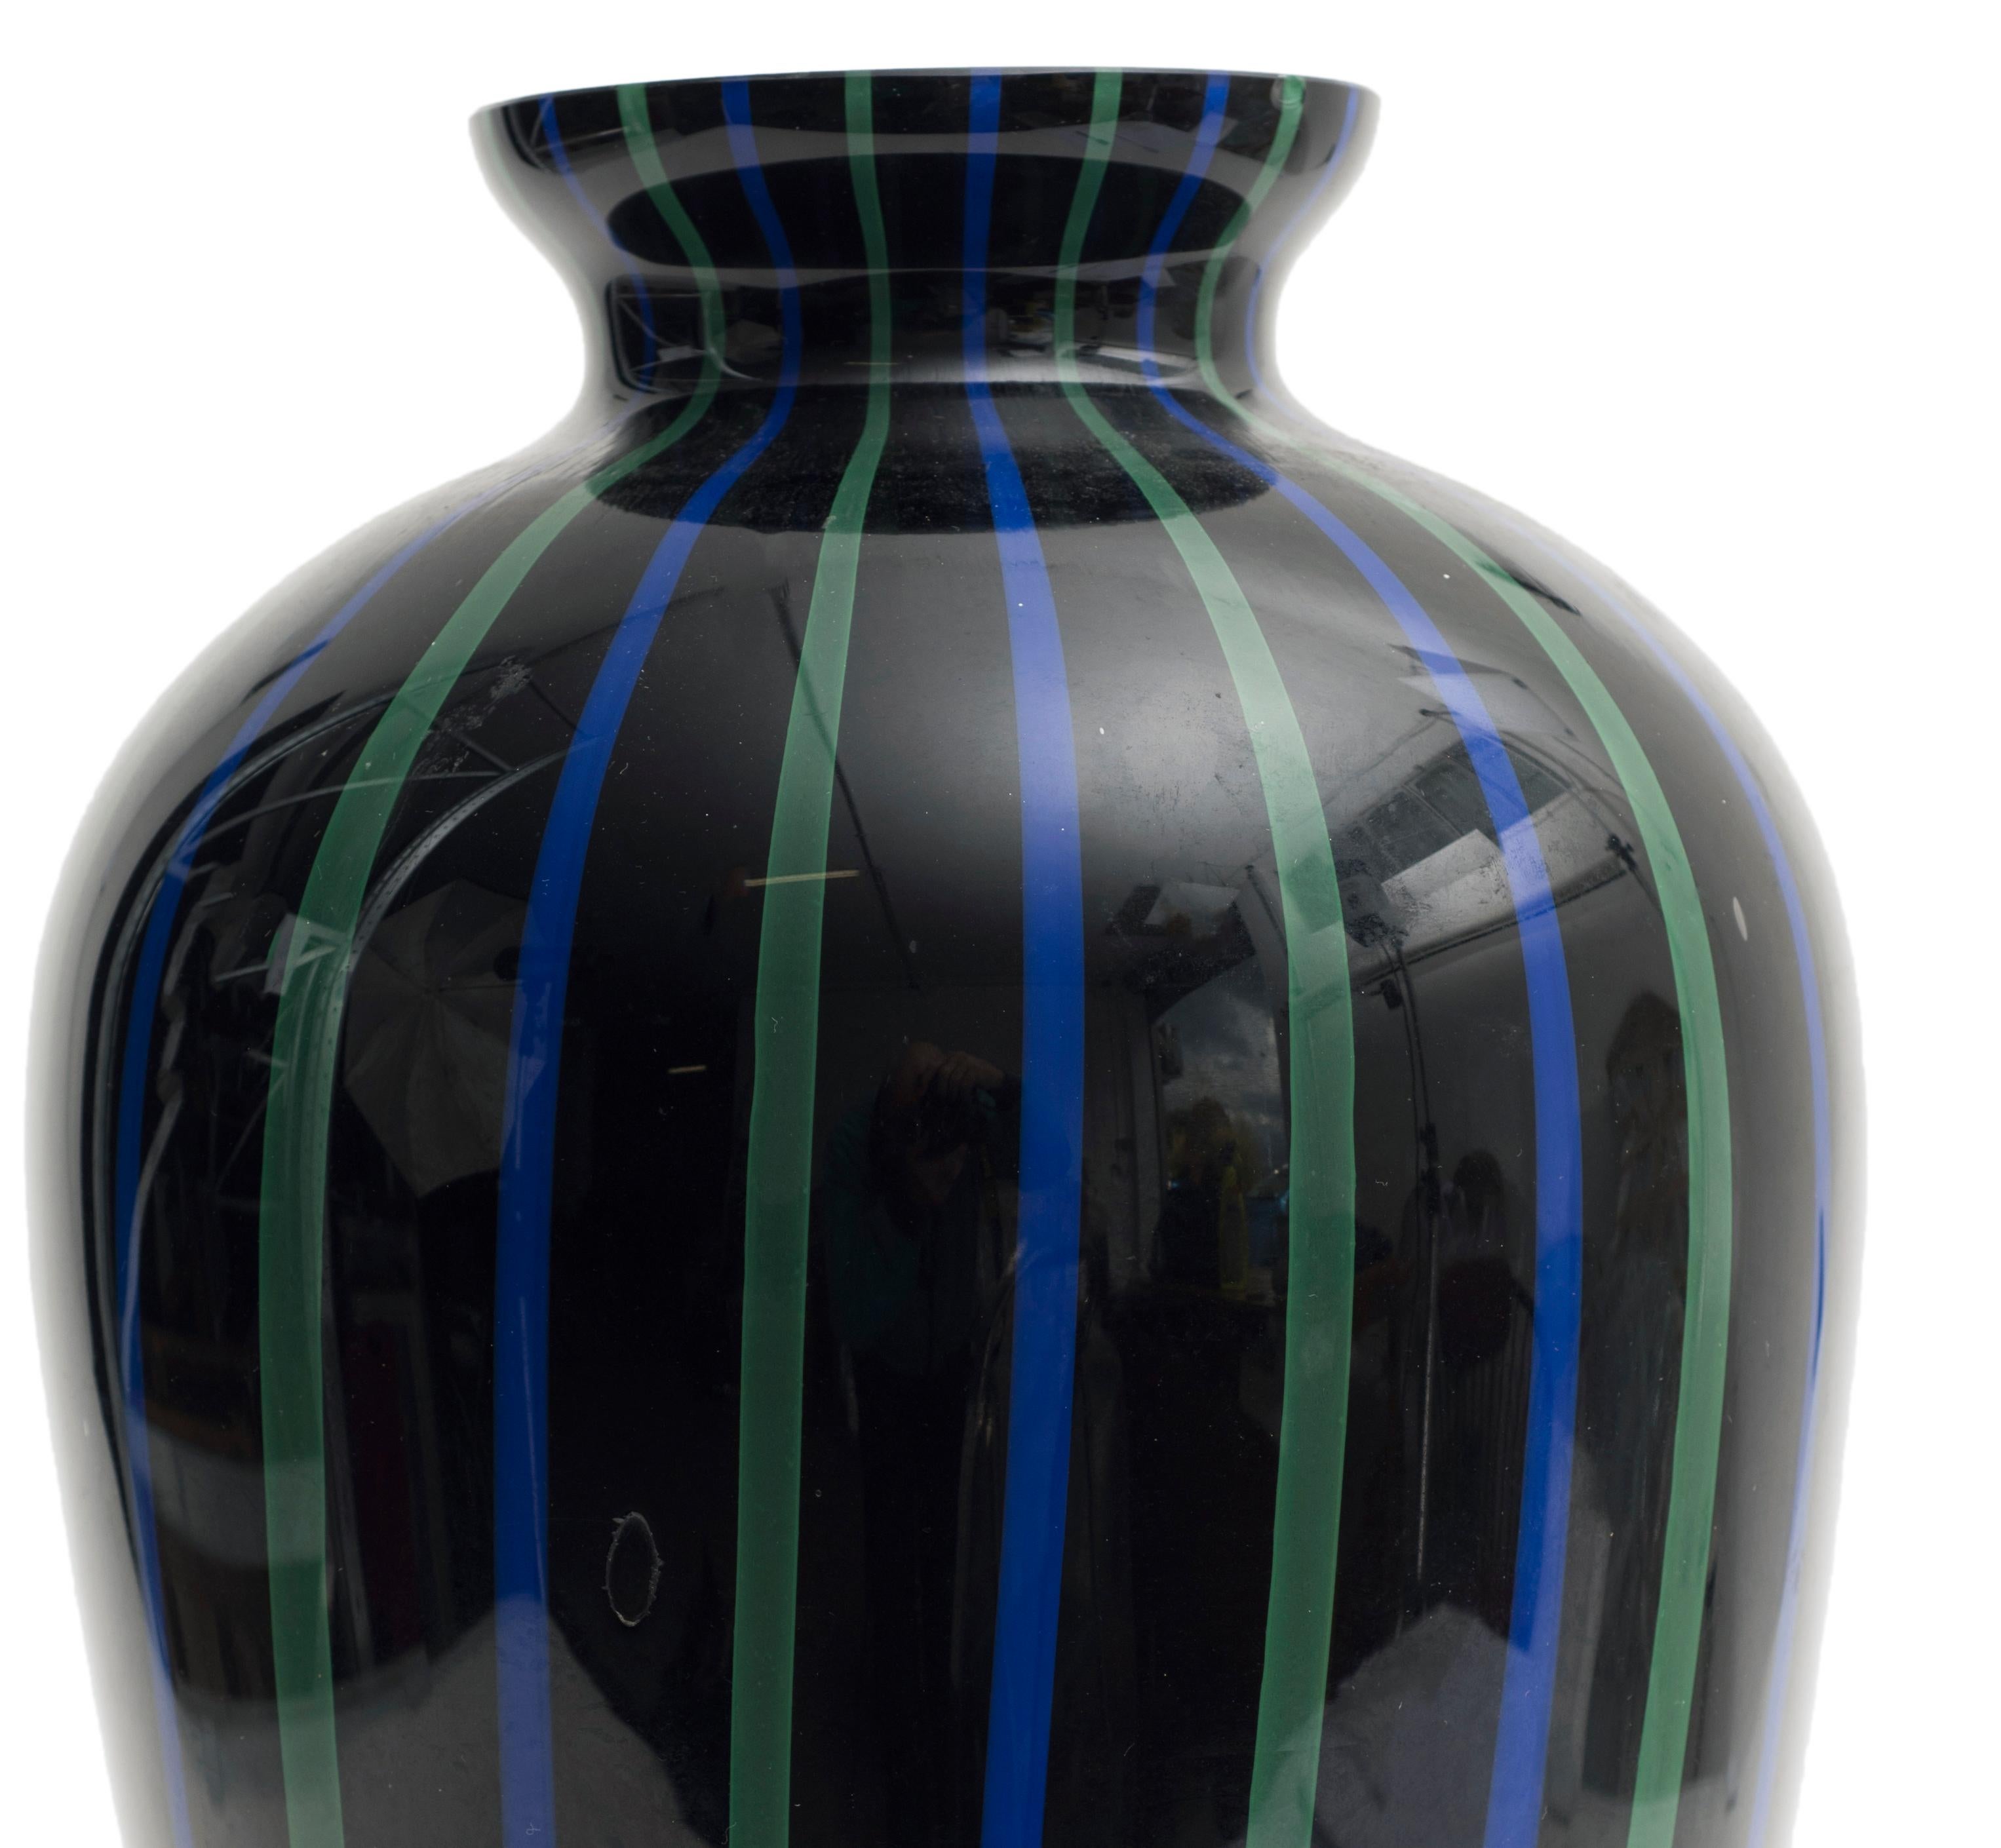 Magnifique vase en verre de Murano.
Le vase est noir et décoré de lignes verticales vertes et bleues.
Créé dans les années 1970.
Très bonnes conditions.